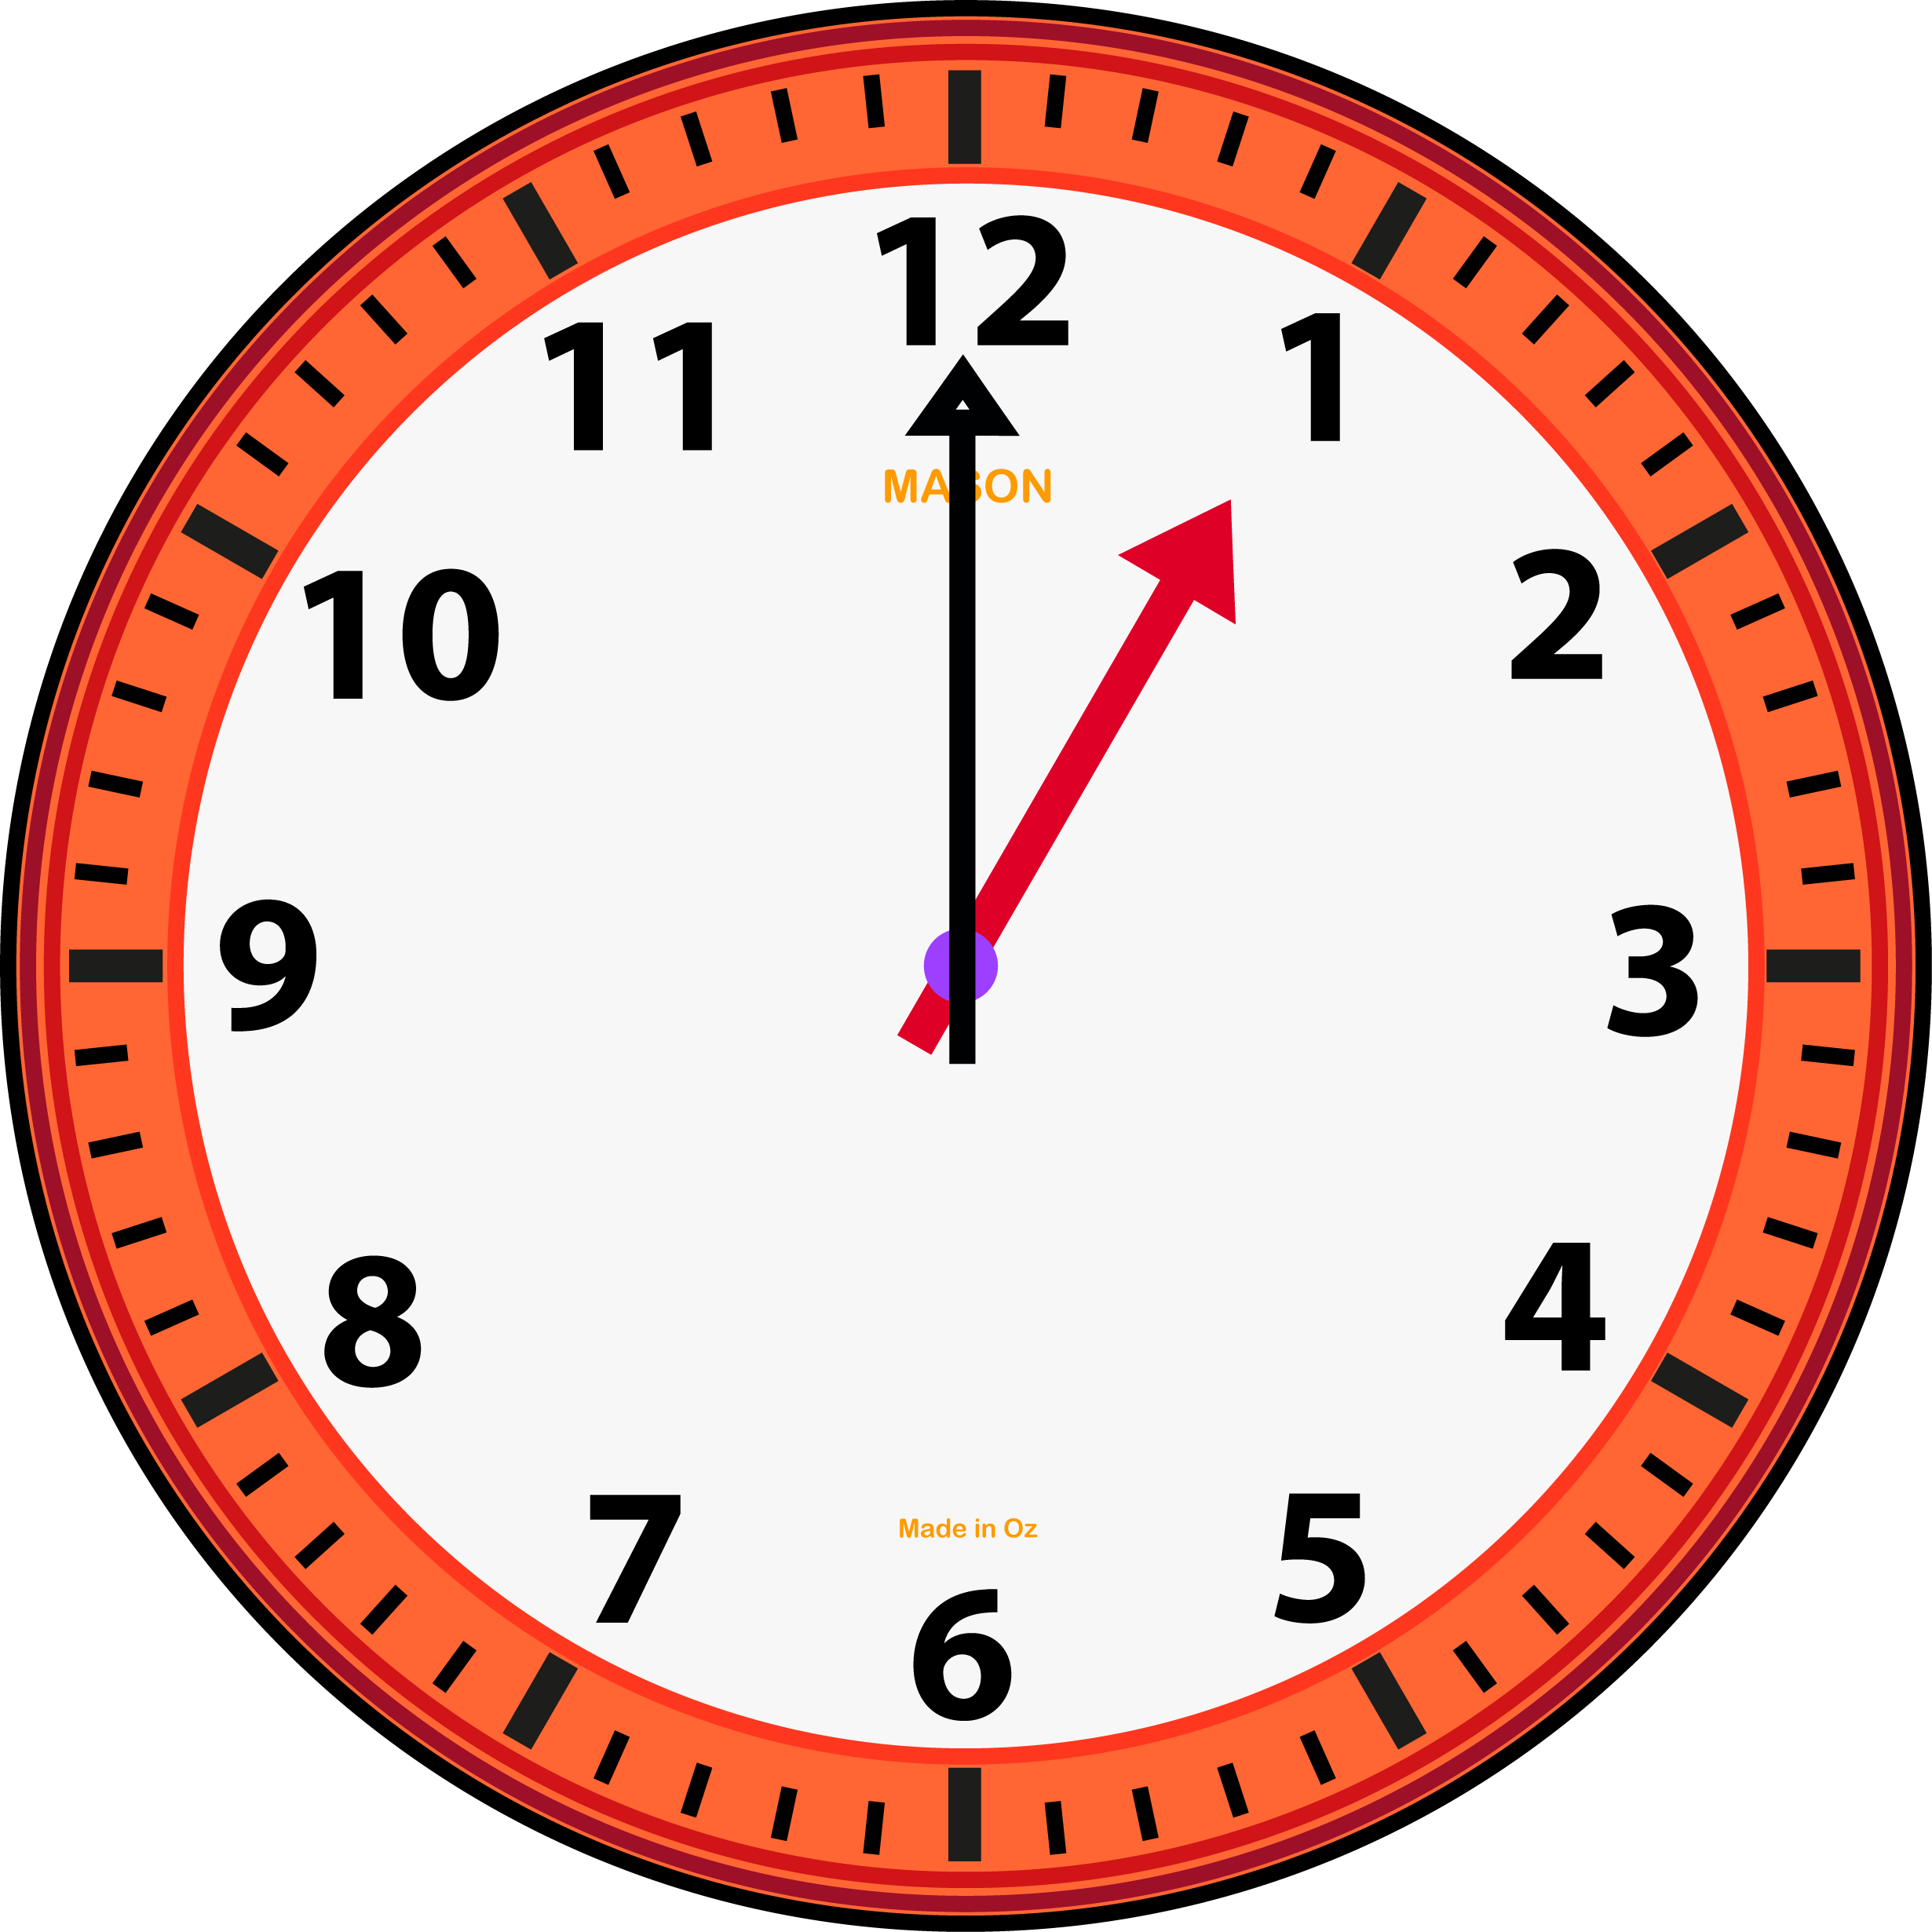 Сайт часы 5. Часы 1 час. Изображение часов. Часы показывают час. Рисунок часов.